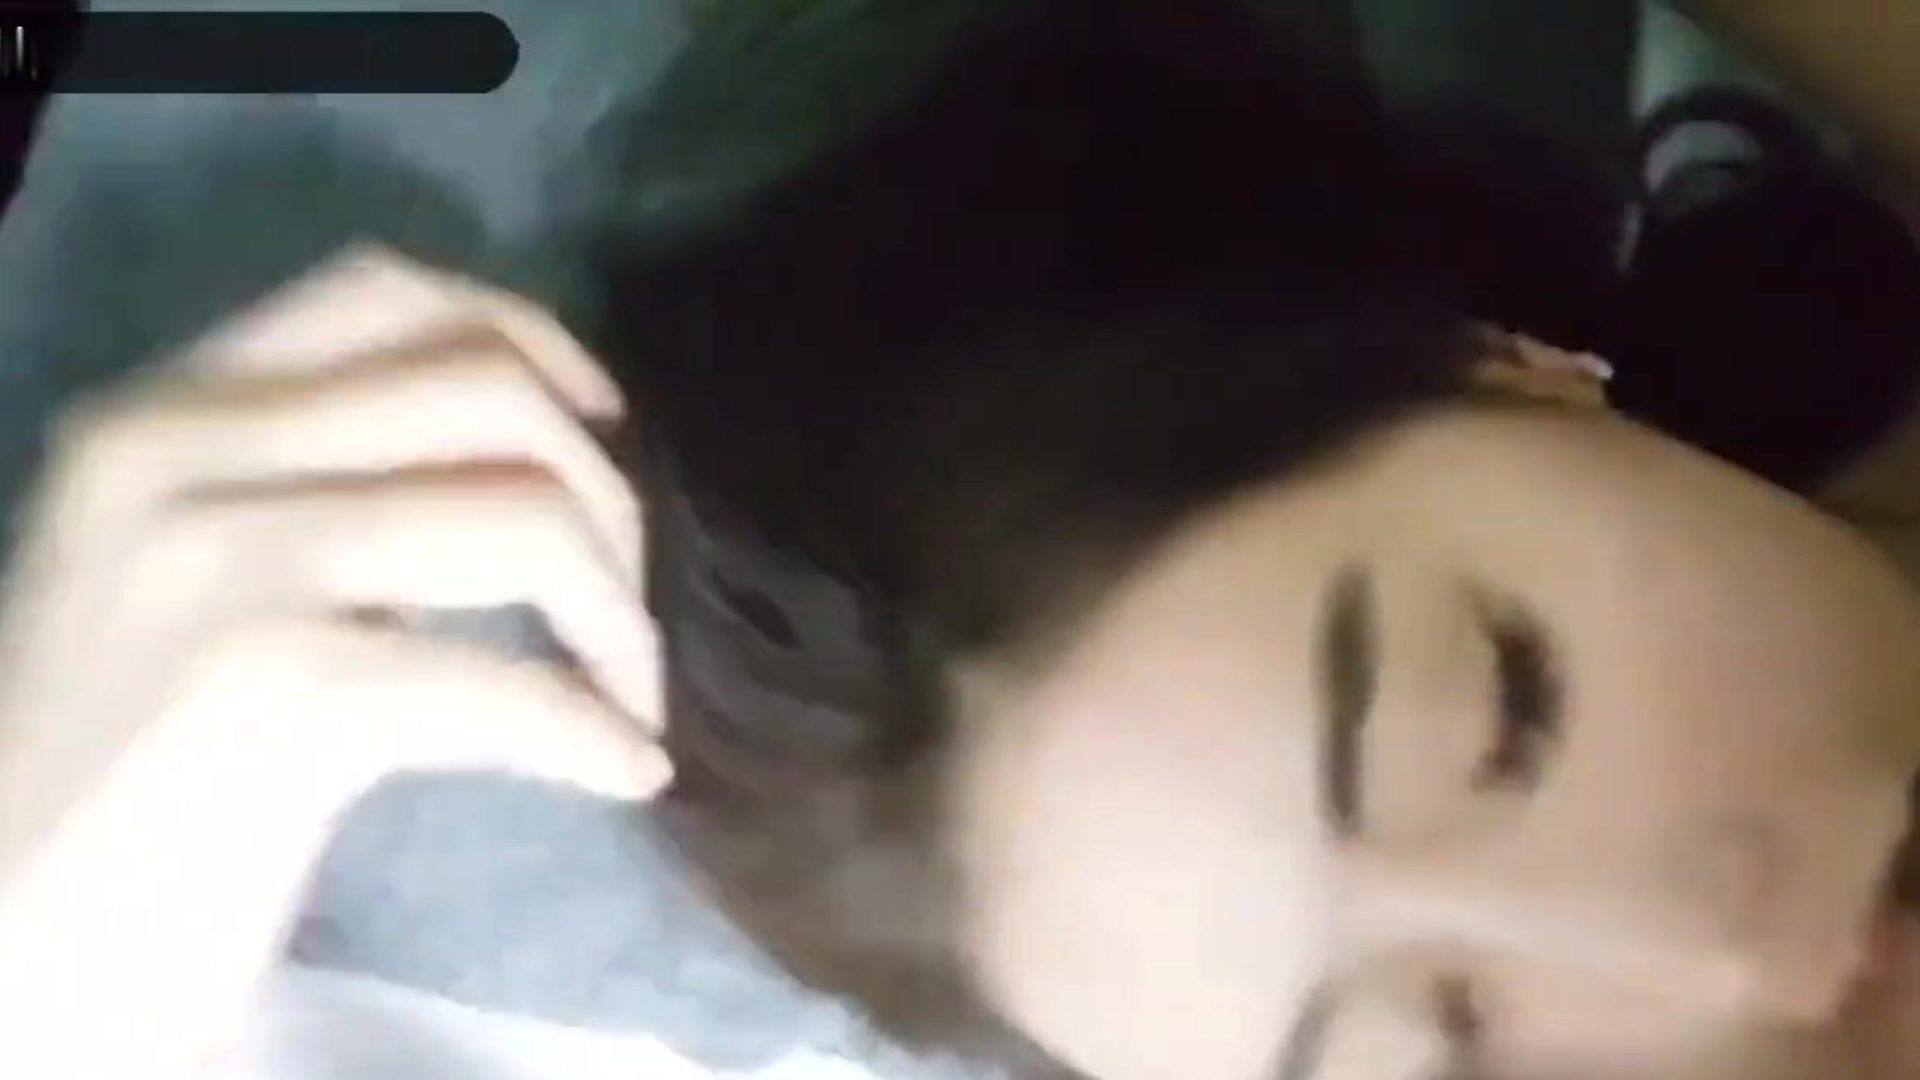 ik gebruik een grote lul om mijn vriendin wakker te maken om seks te hebben: porno c7 kijk hoe ik een grote lul gebruik om mijn vriendin wakker te maken voor seksvideo op xhamster - de ultieme schare gratis aziatische koreaanse hd hardcore porno tube-video's